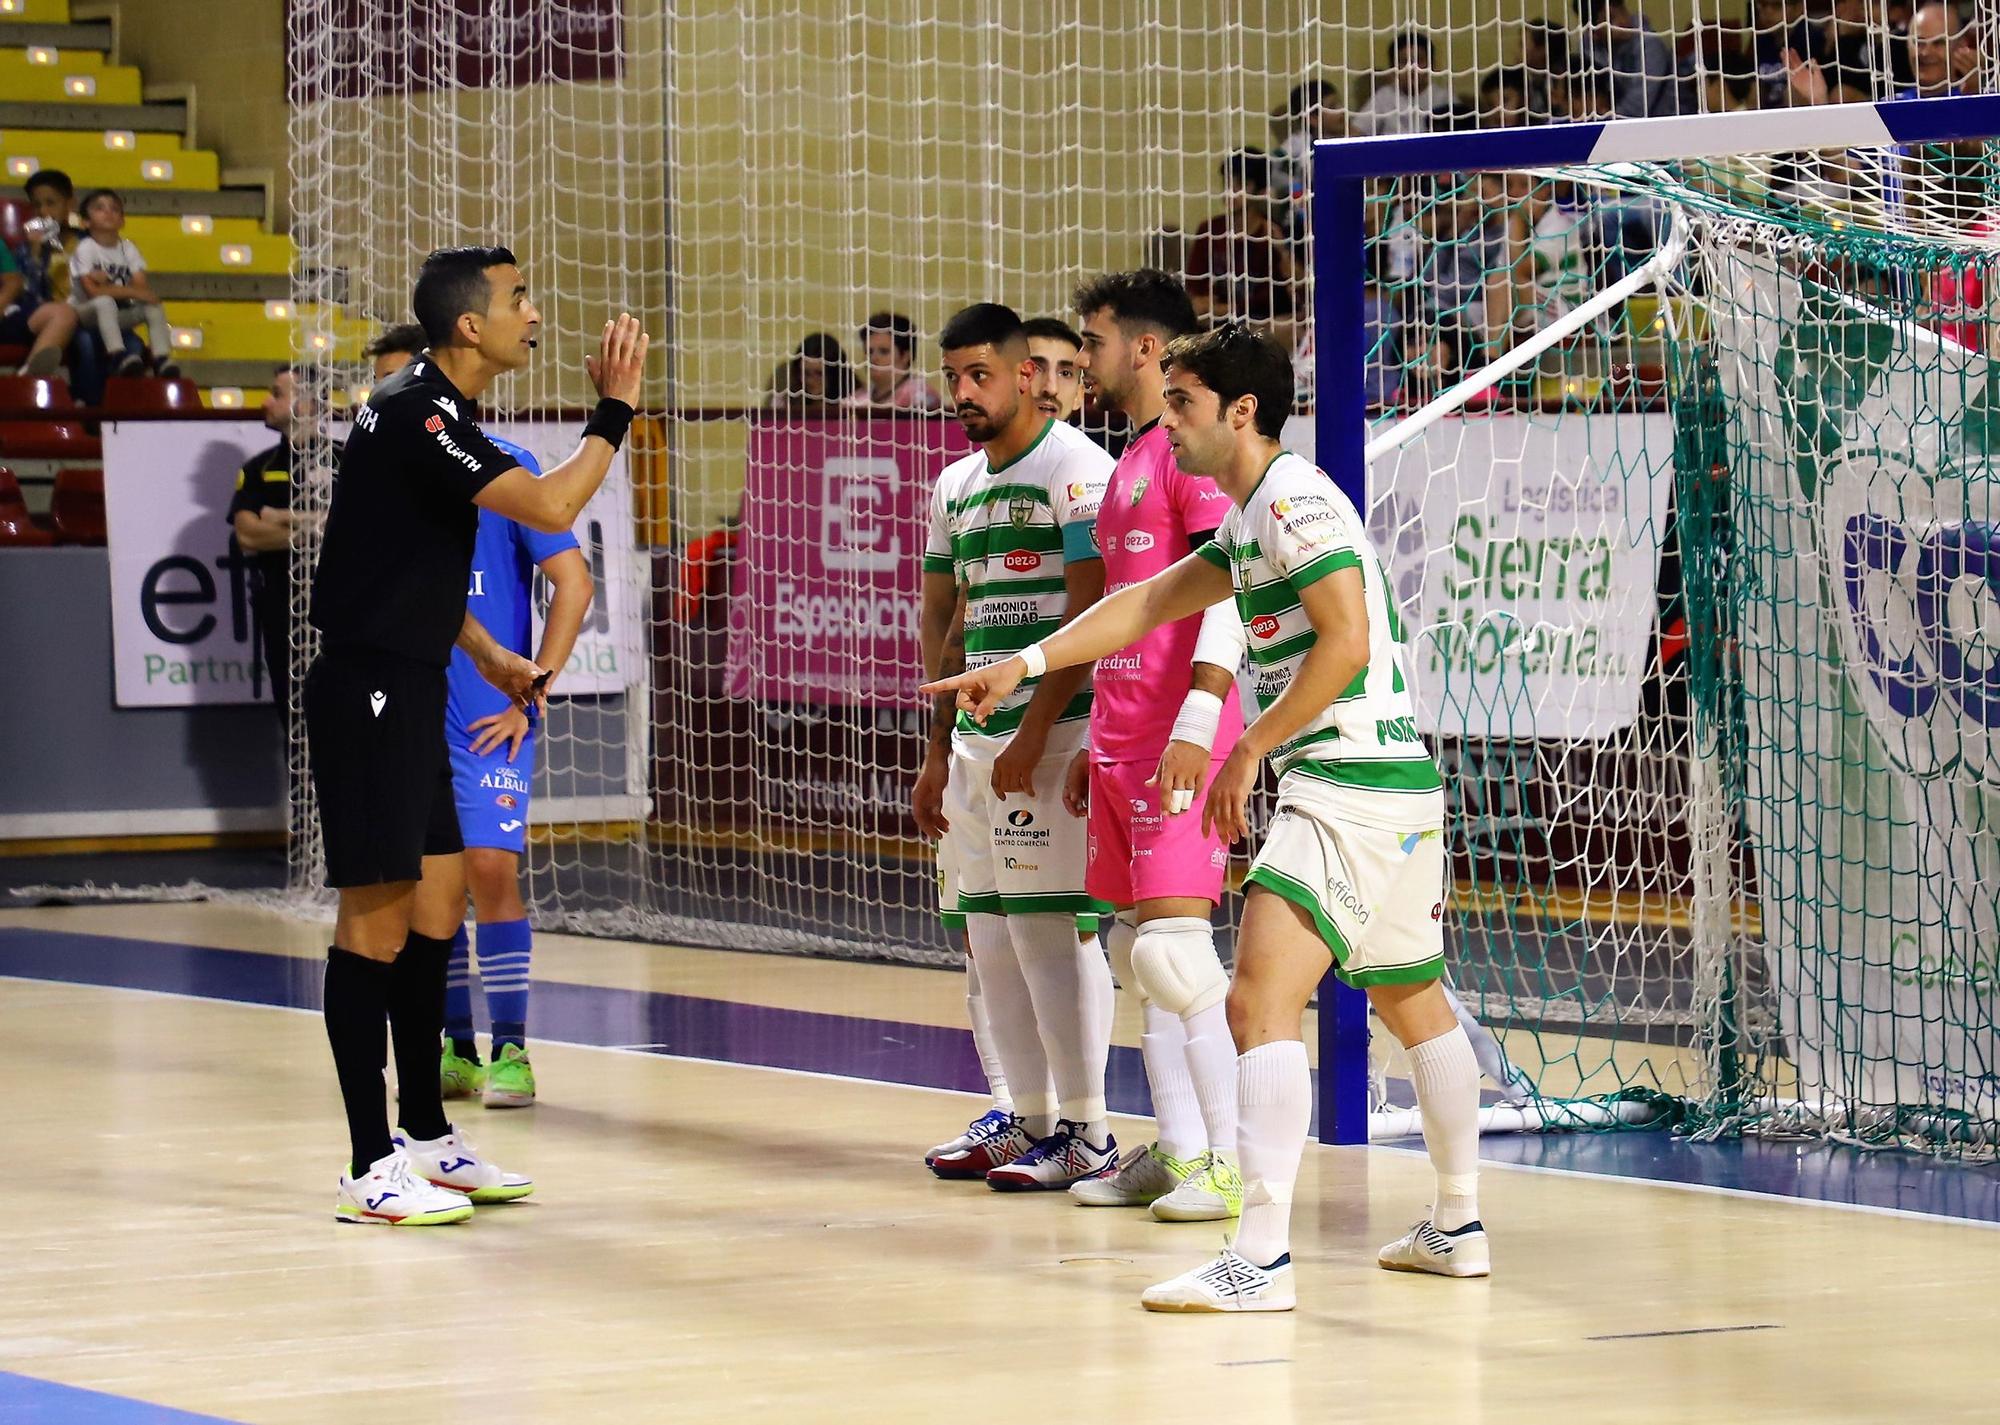 La despedida de la liga del Córdoba Futsal en imágenes